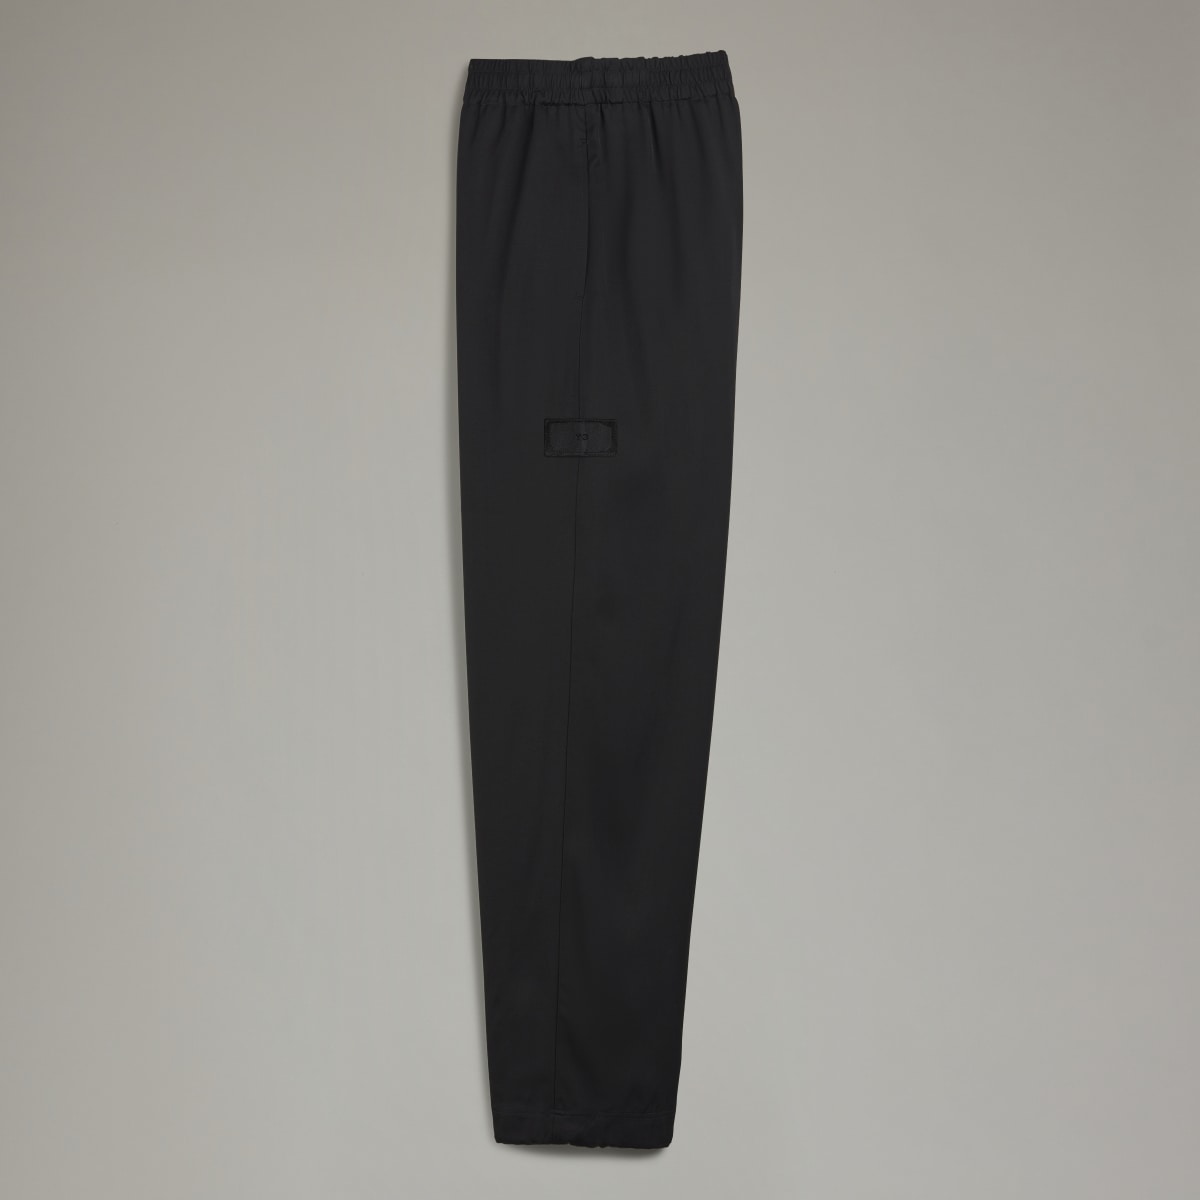 Adidas Y-3 Elegant Cuffed Trousers. 5